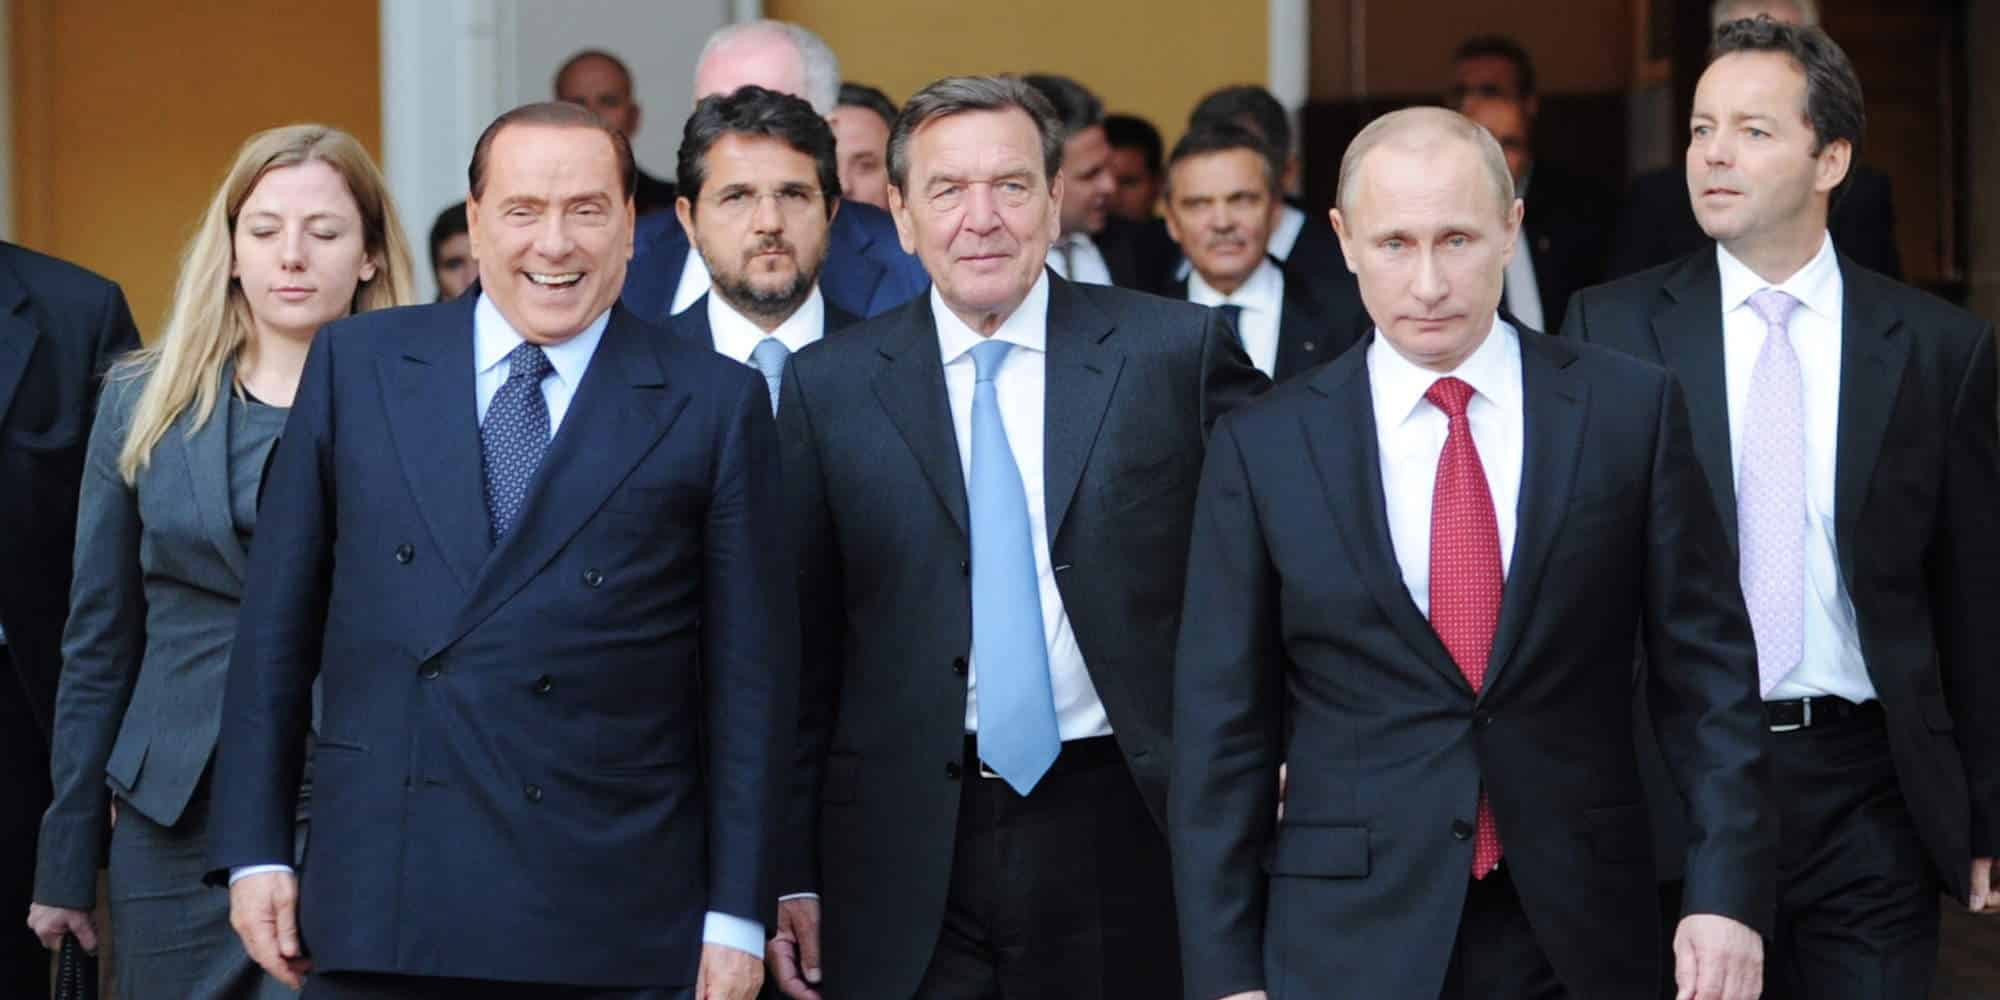 Ο Σίλβιο Μπερλουσκόνι μαζί με τον Βλαντιμίρ Πούτιν και στη μέση ο πρώην Γερμανός καγκελάριος Γκέρχαρντ Σρέντερ